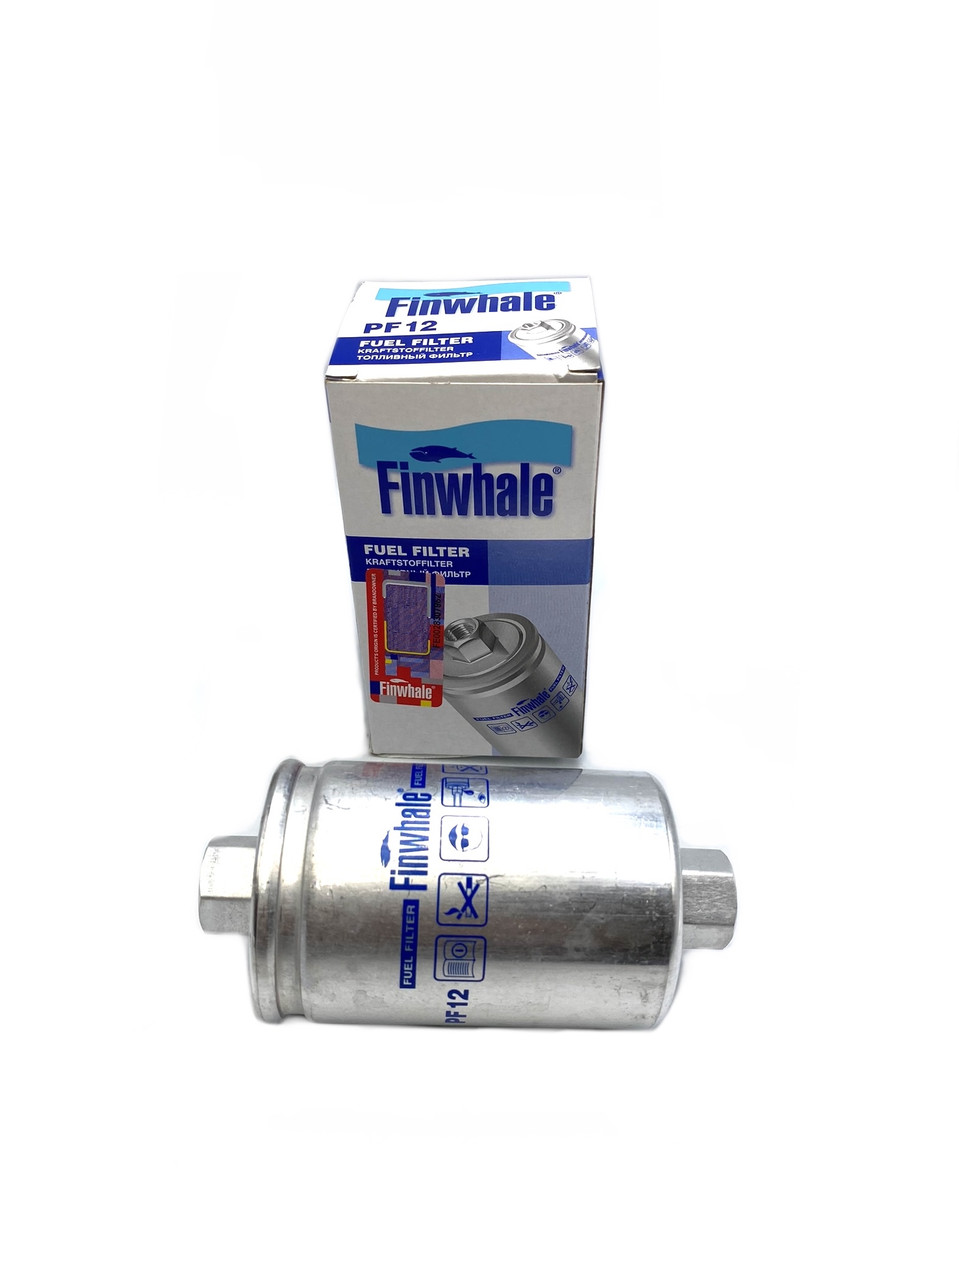 Фільтр паливний тонкого очищення FINWHALE для ваз 2104 2105 2107 21214 2108 2109 21099 2115 інжектор гайка odt